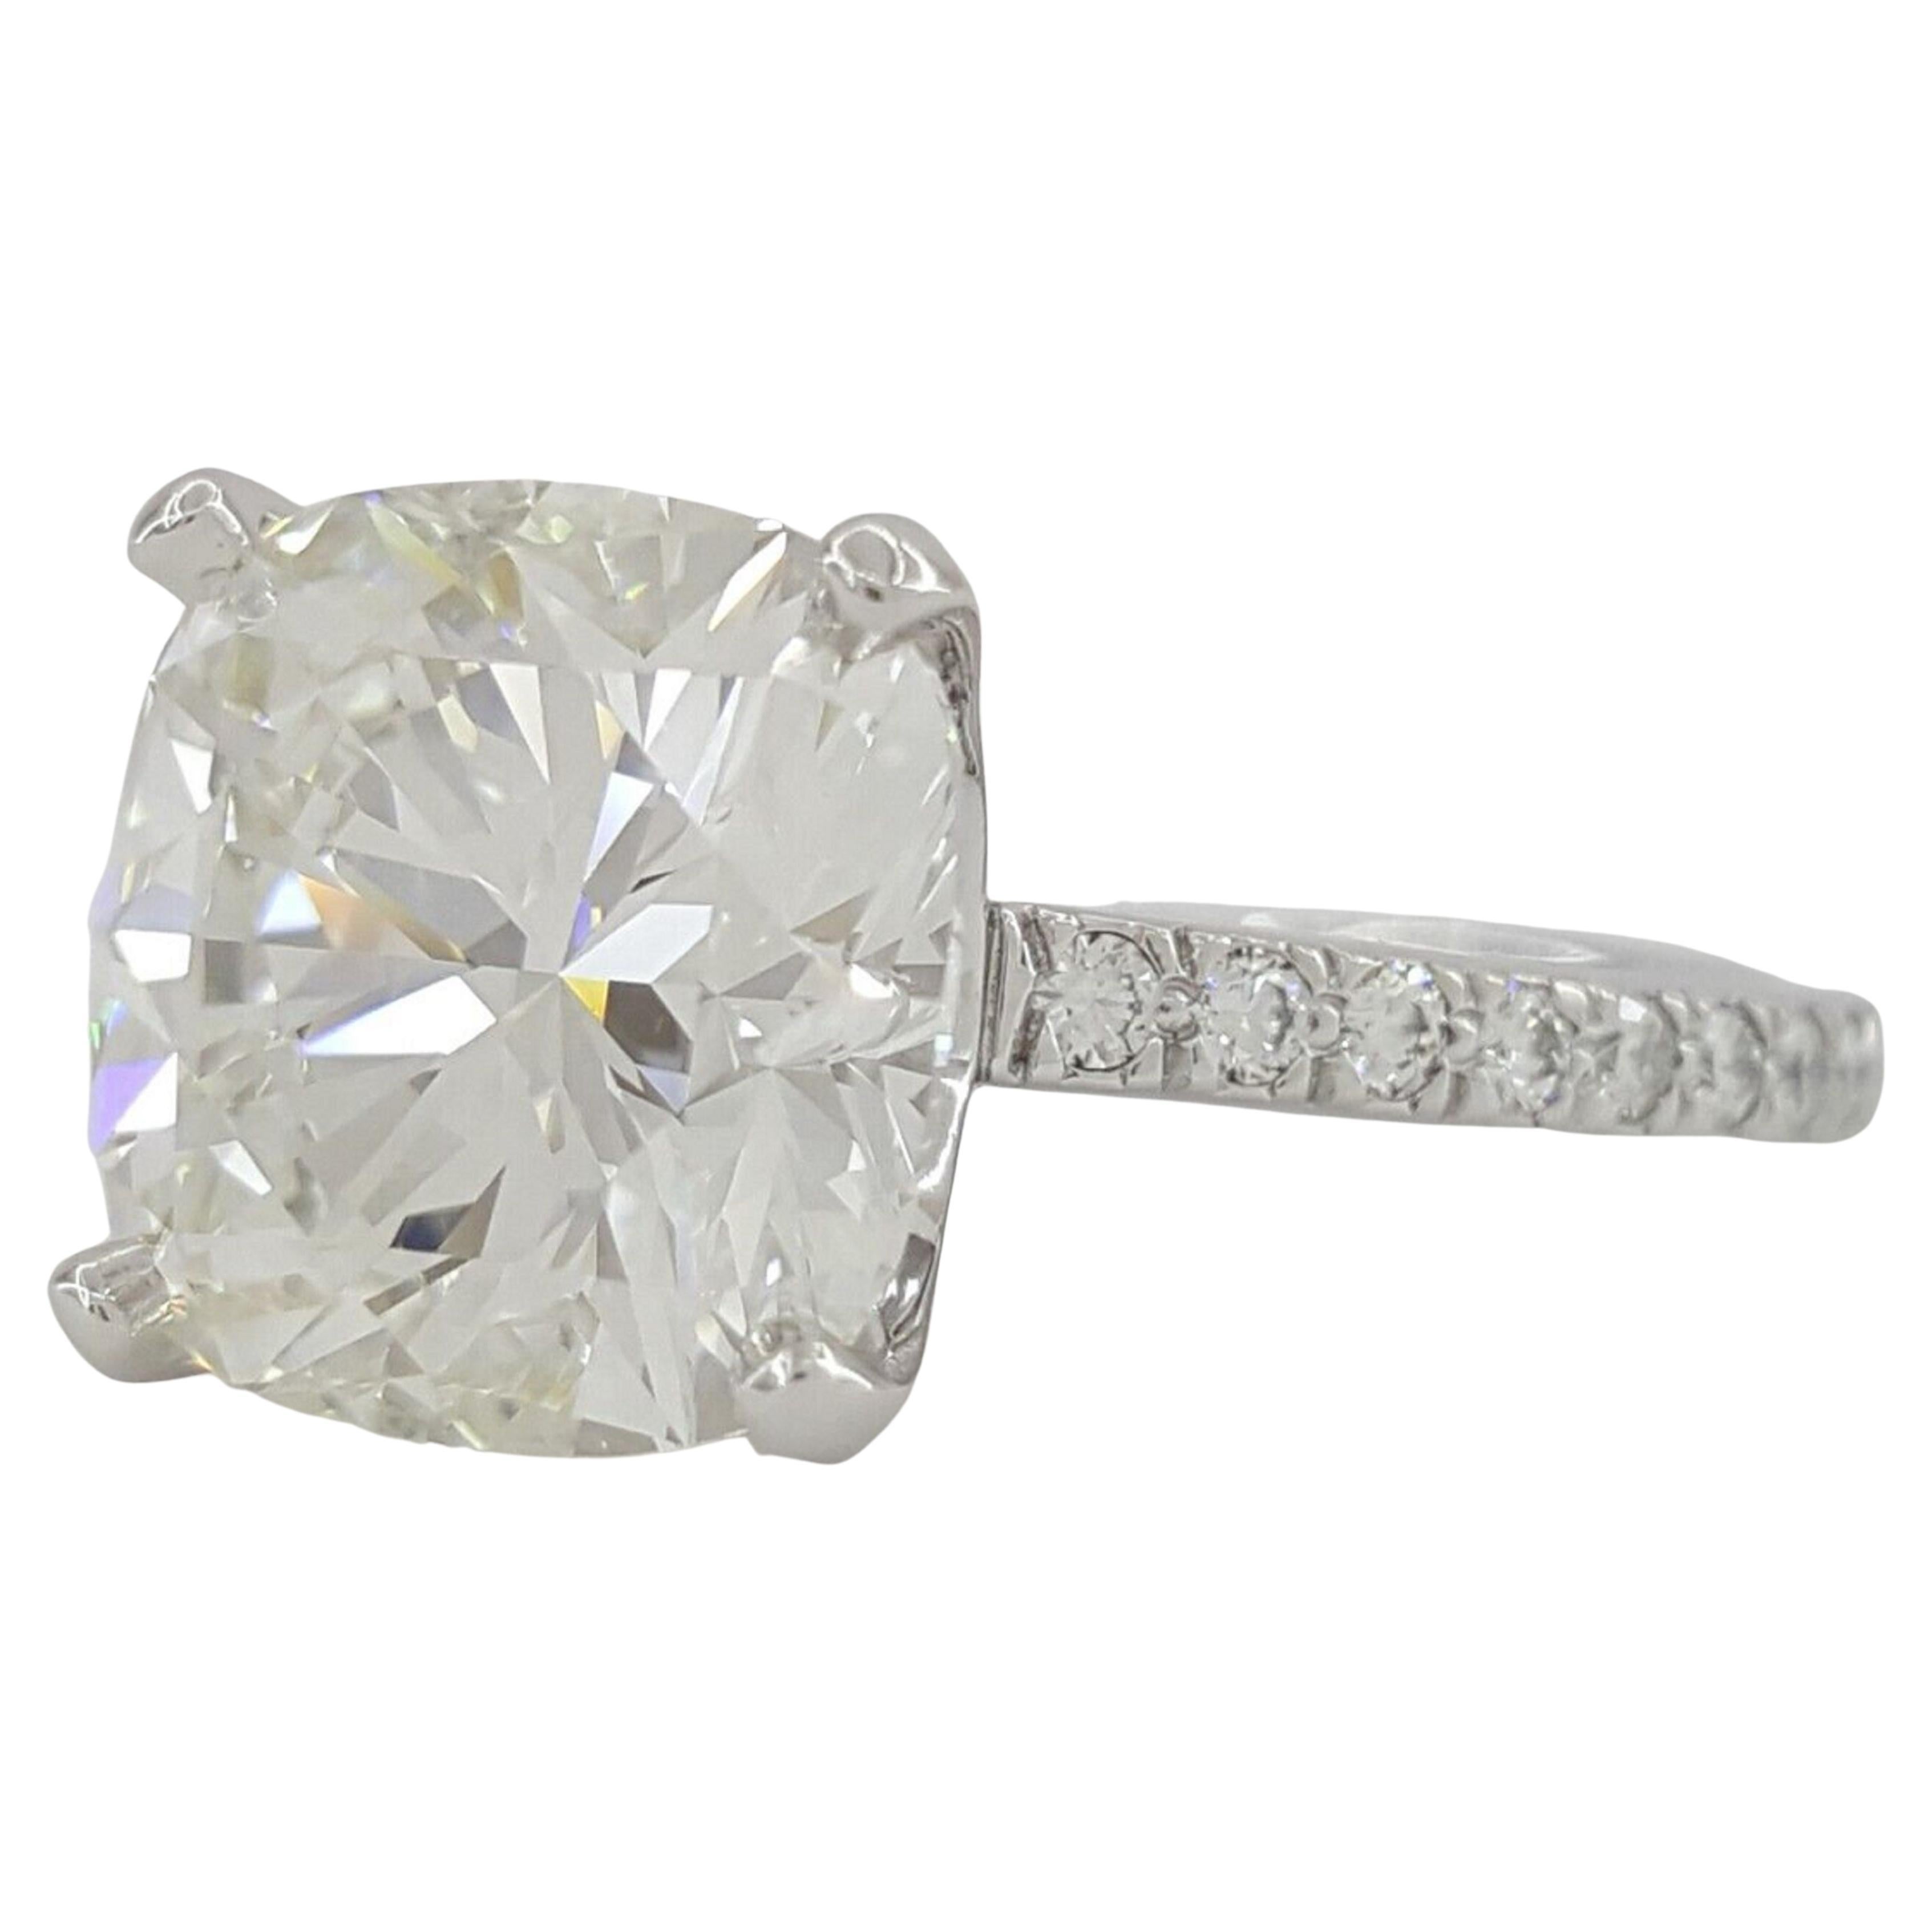 Un exquis diamant coussin brillant avec deux diamants baguettes effilés est monté en platine massif. La quantité totale de carats est de 1 carats.
Le poids de la pierre principale est de 4 carats
a F Color
vs2 Clarté


